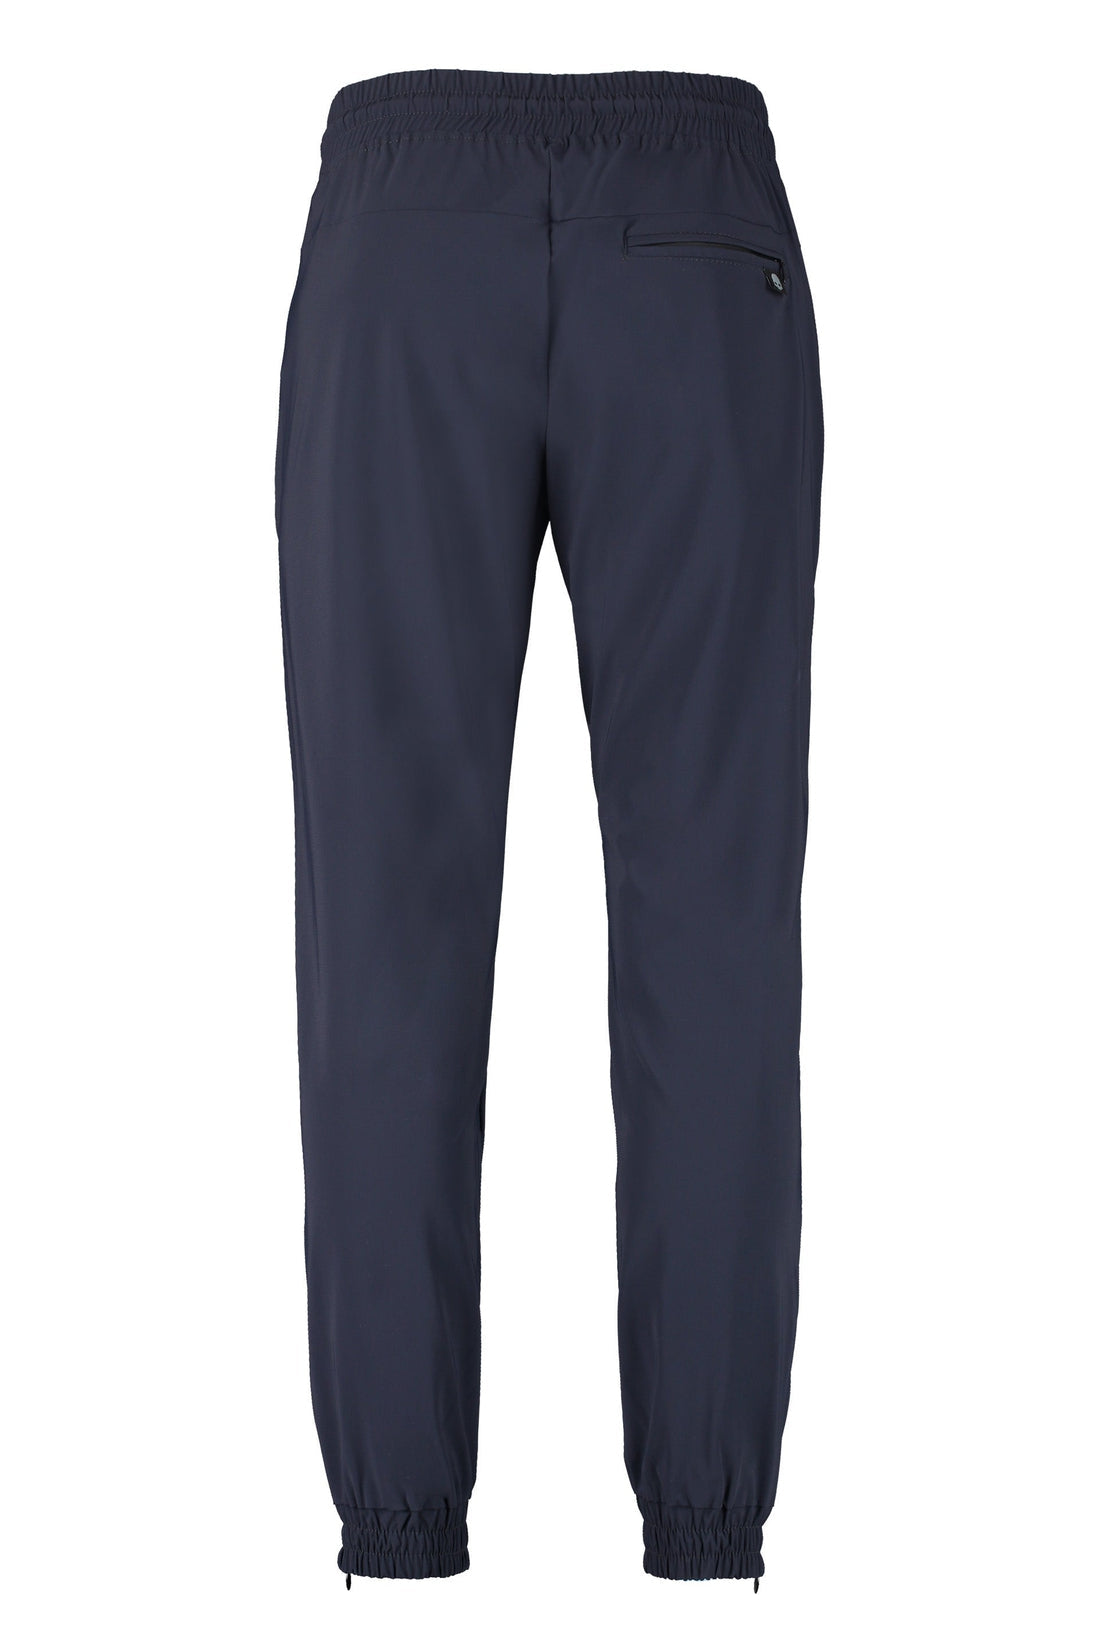 THE (Alphabet)-OUTLET-SALE-THE (Pants) - Technical fabric pants-ARCHIVIST